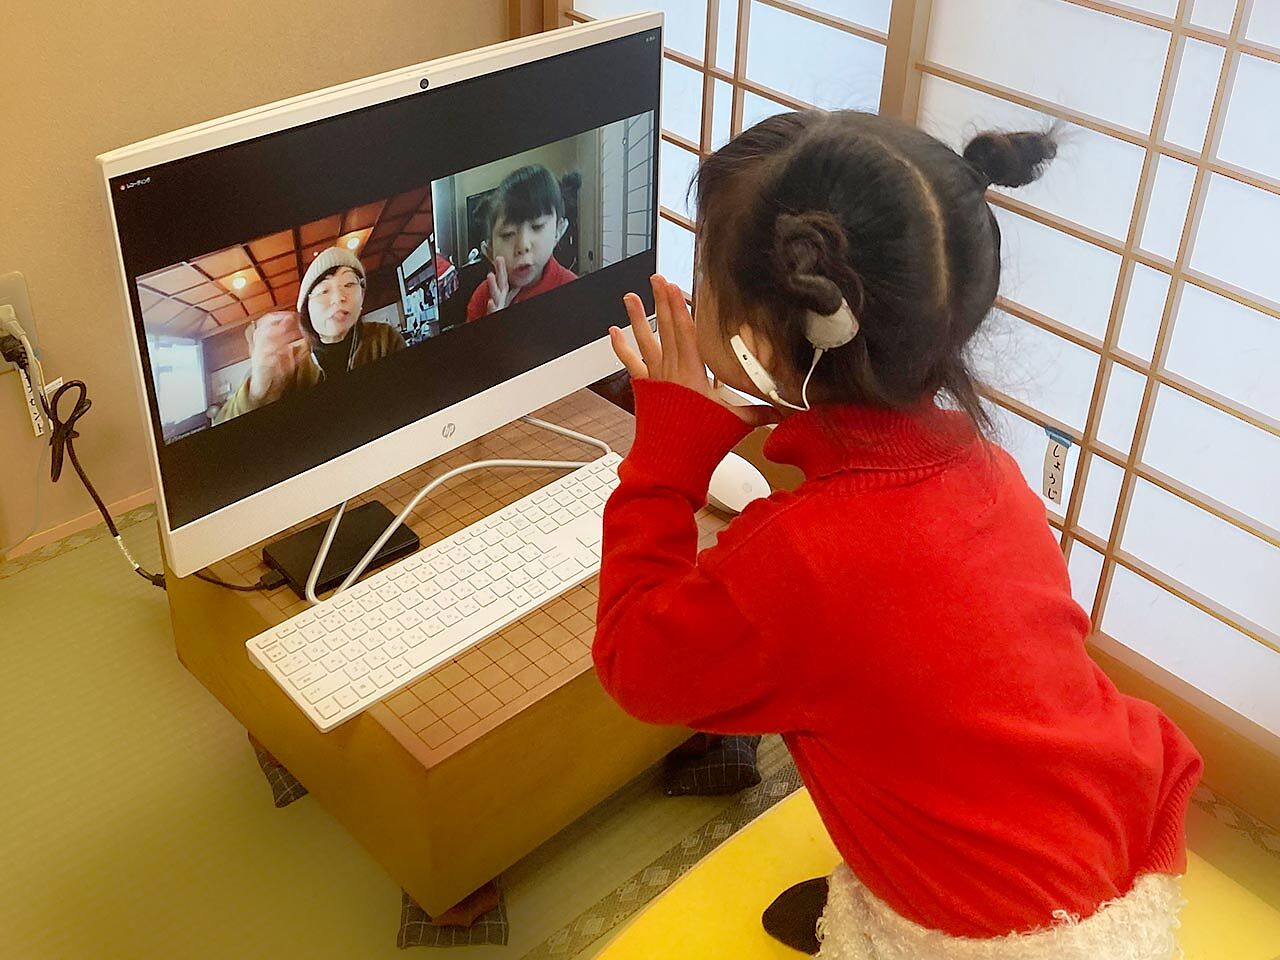 女の子がパソコンに向かって会話をしている画像